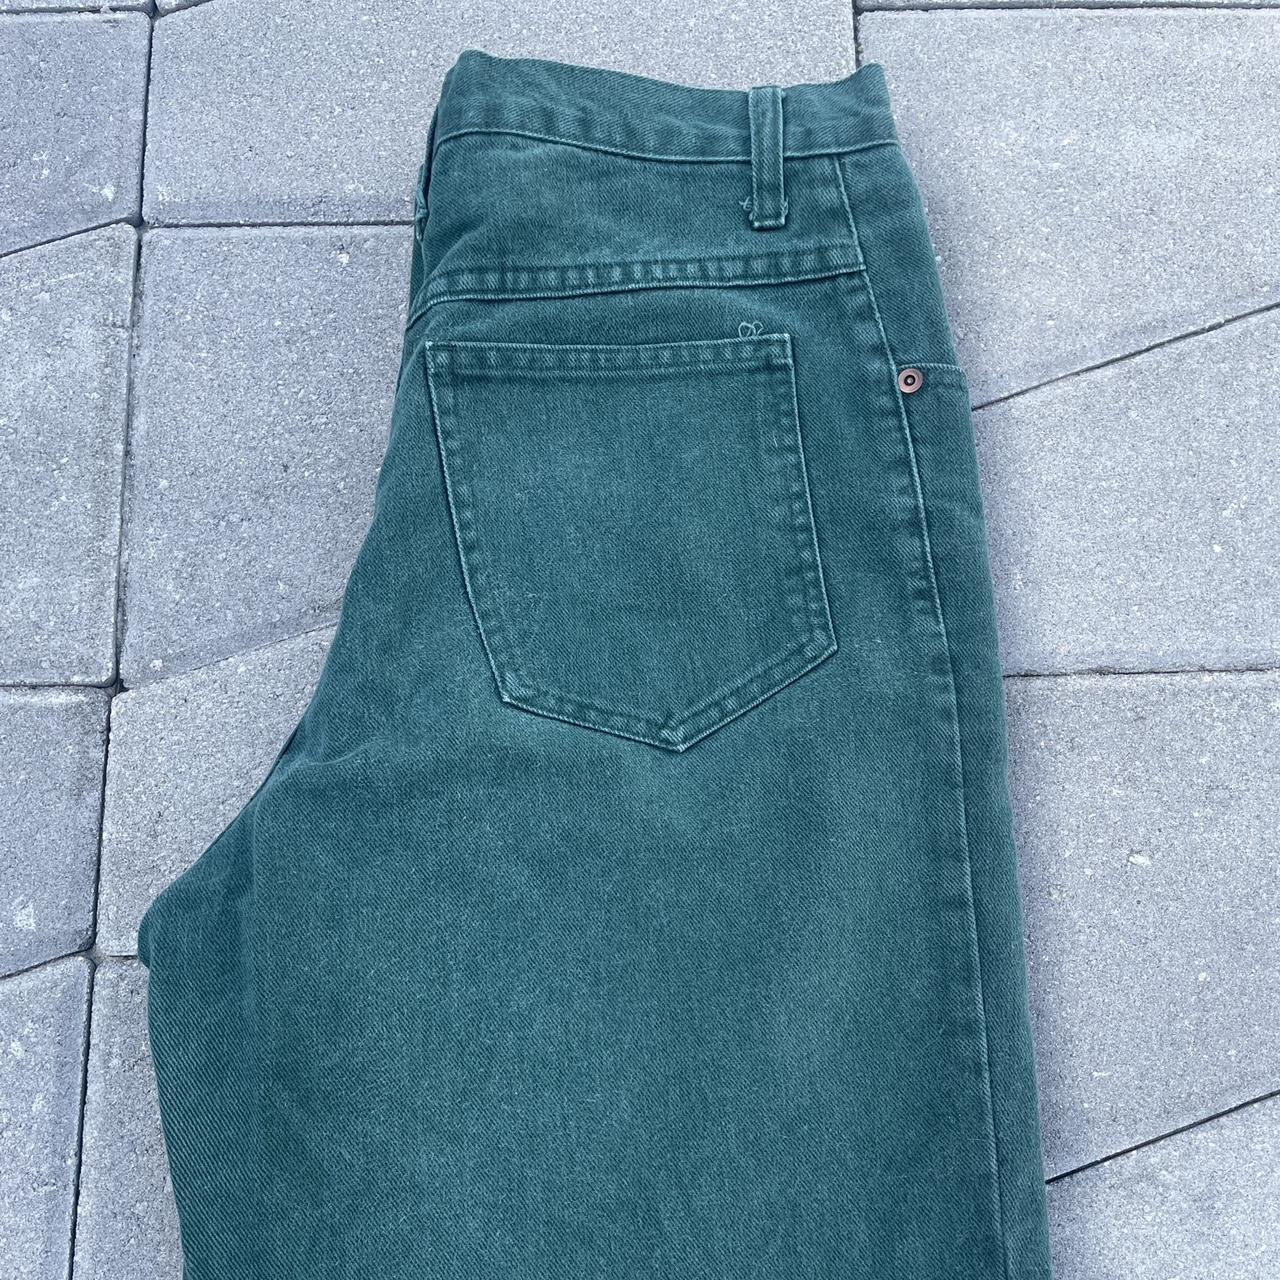 True vintage Trade Secret denim pants made in... - Depop